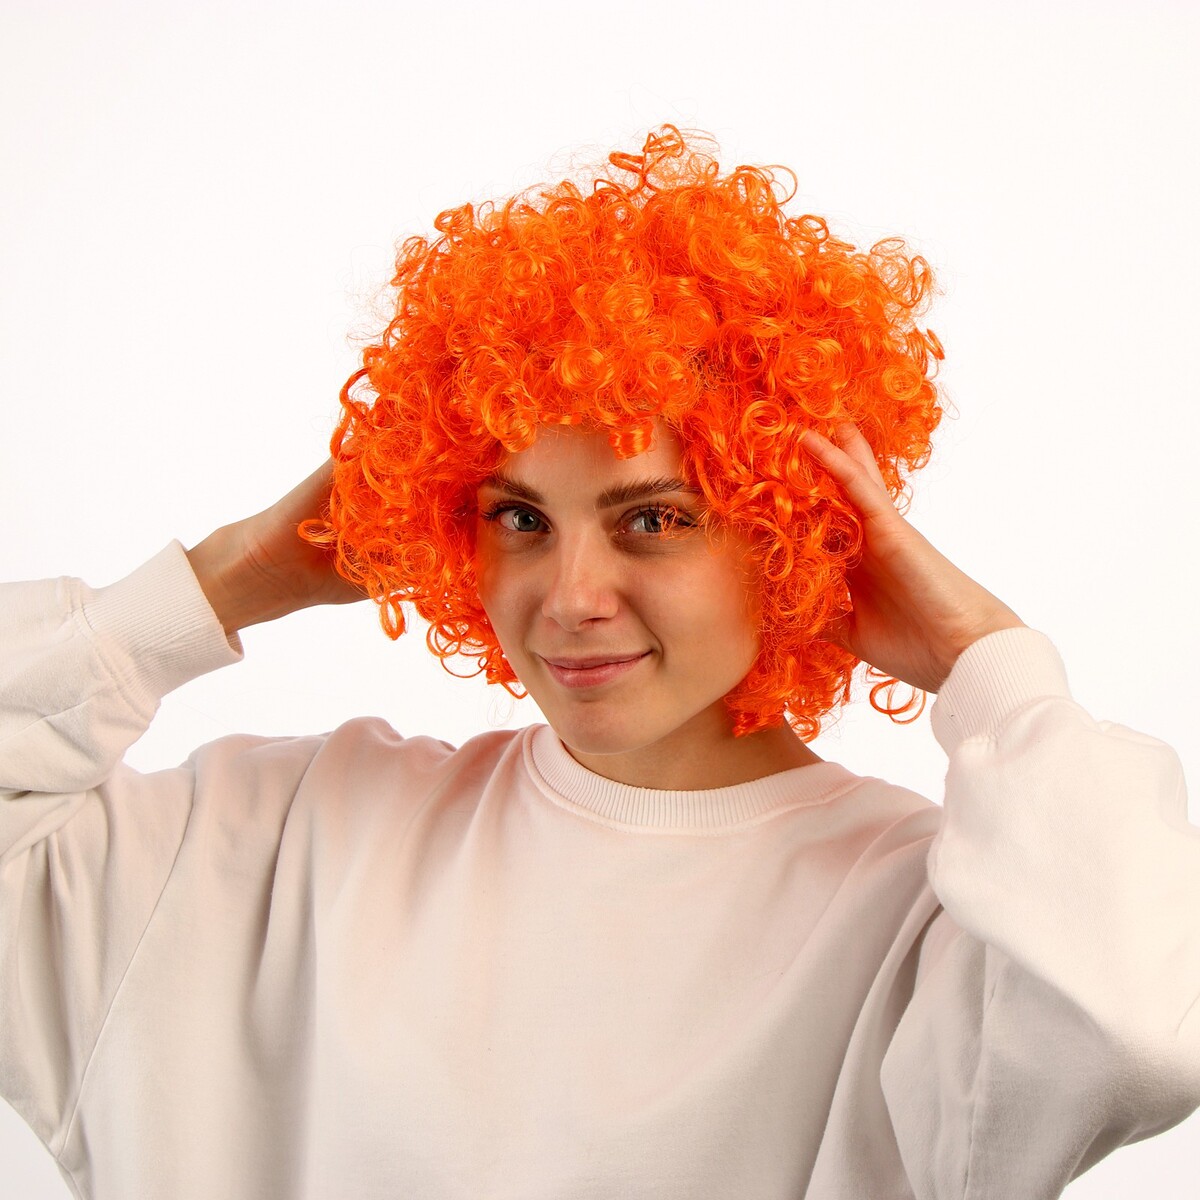 Карнавальный парик карнавальный парик длинные прямые волосы оранжевый 120 г